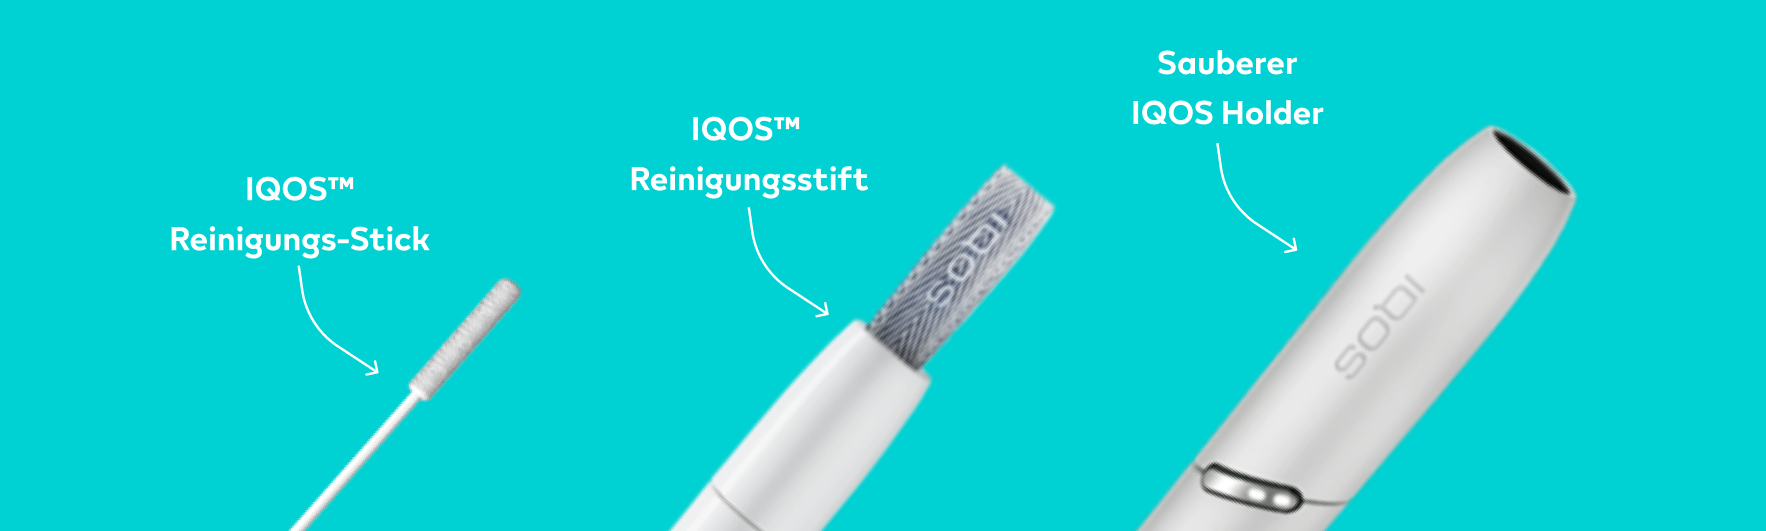 Ein Reinigungs-Stick, ein Reinigungsstift und ein IQOS Holder nebeneinander.